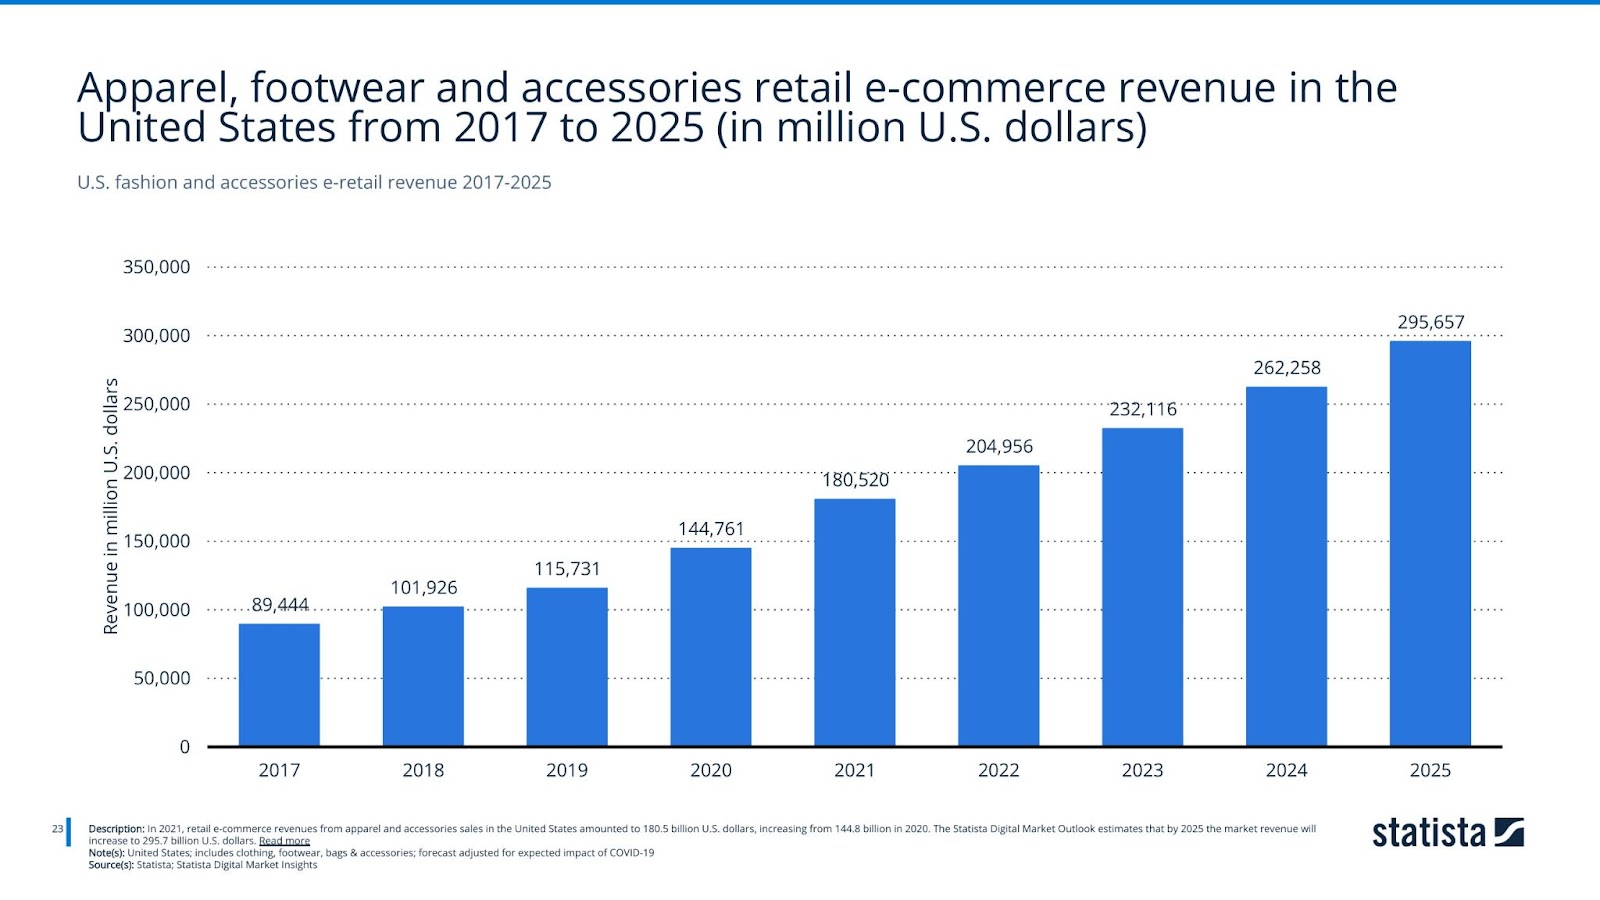 U.S. fashion and accessories e-retail revenue 2017-2025